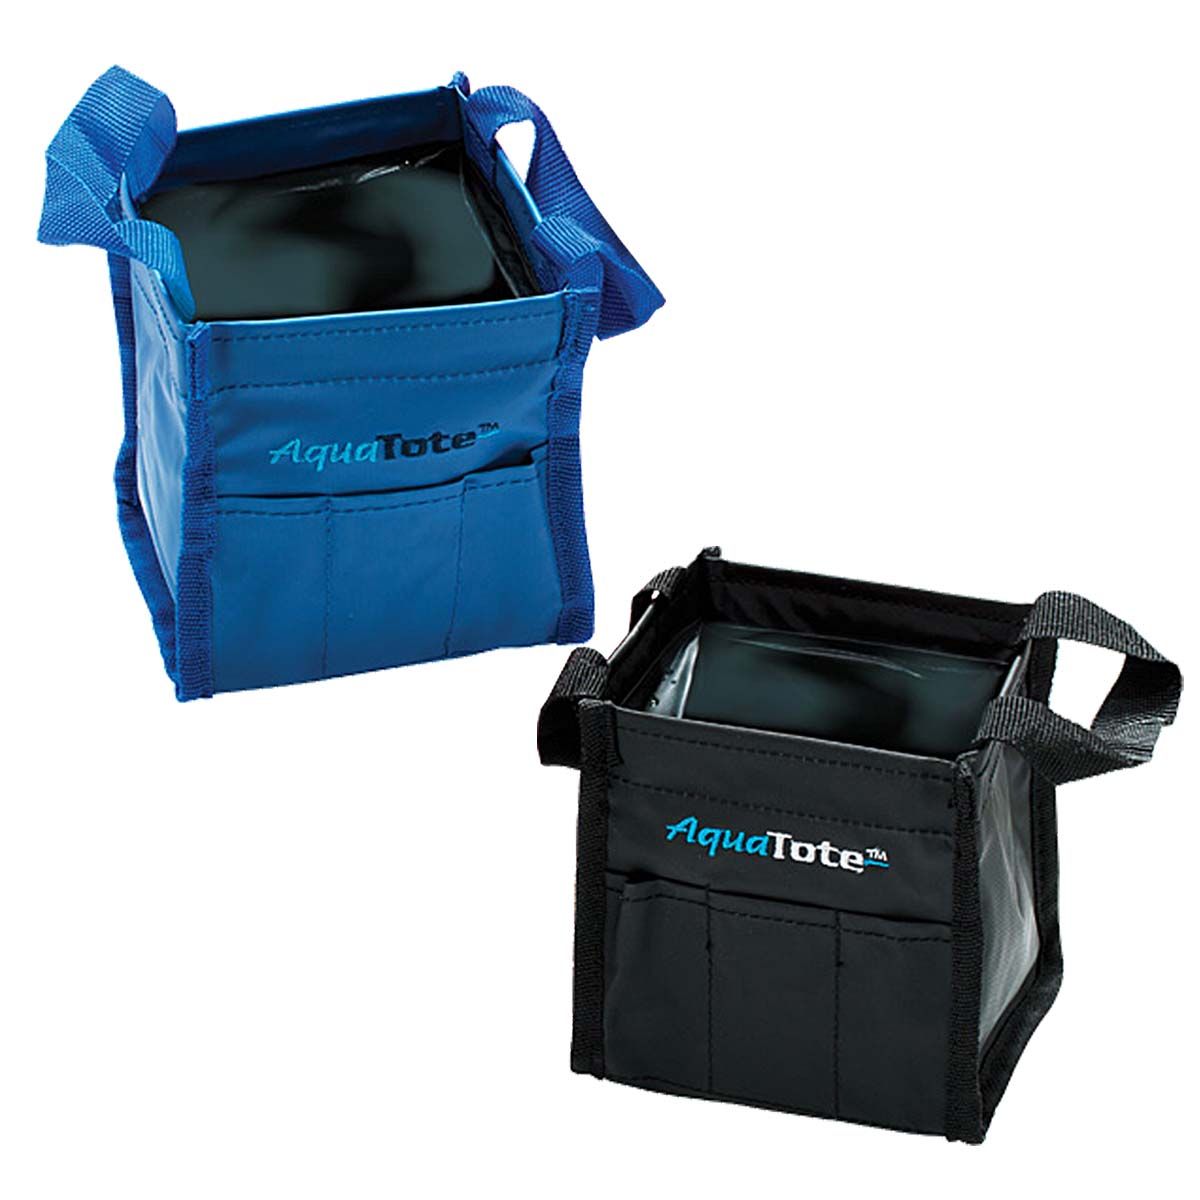 Water Tight Seal Bags  Wholesale Waterproof Polyethylene Bags